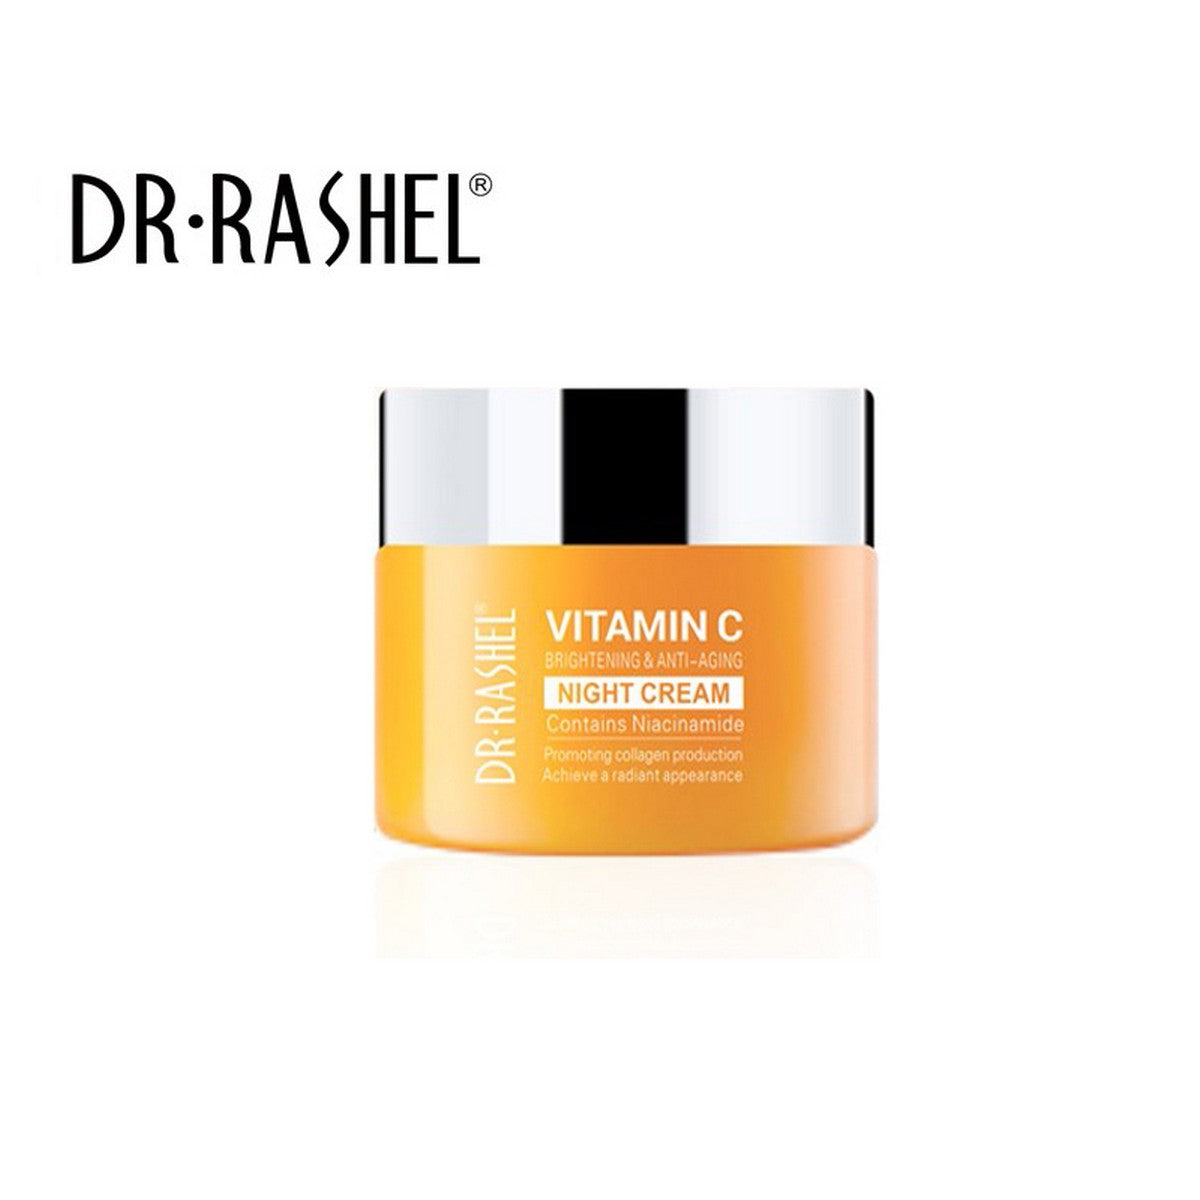 Dr. Rashel Vitamin C Night Cream - 50g